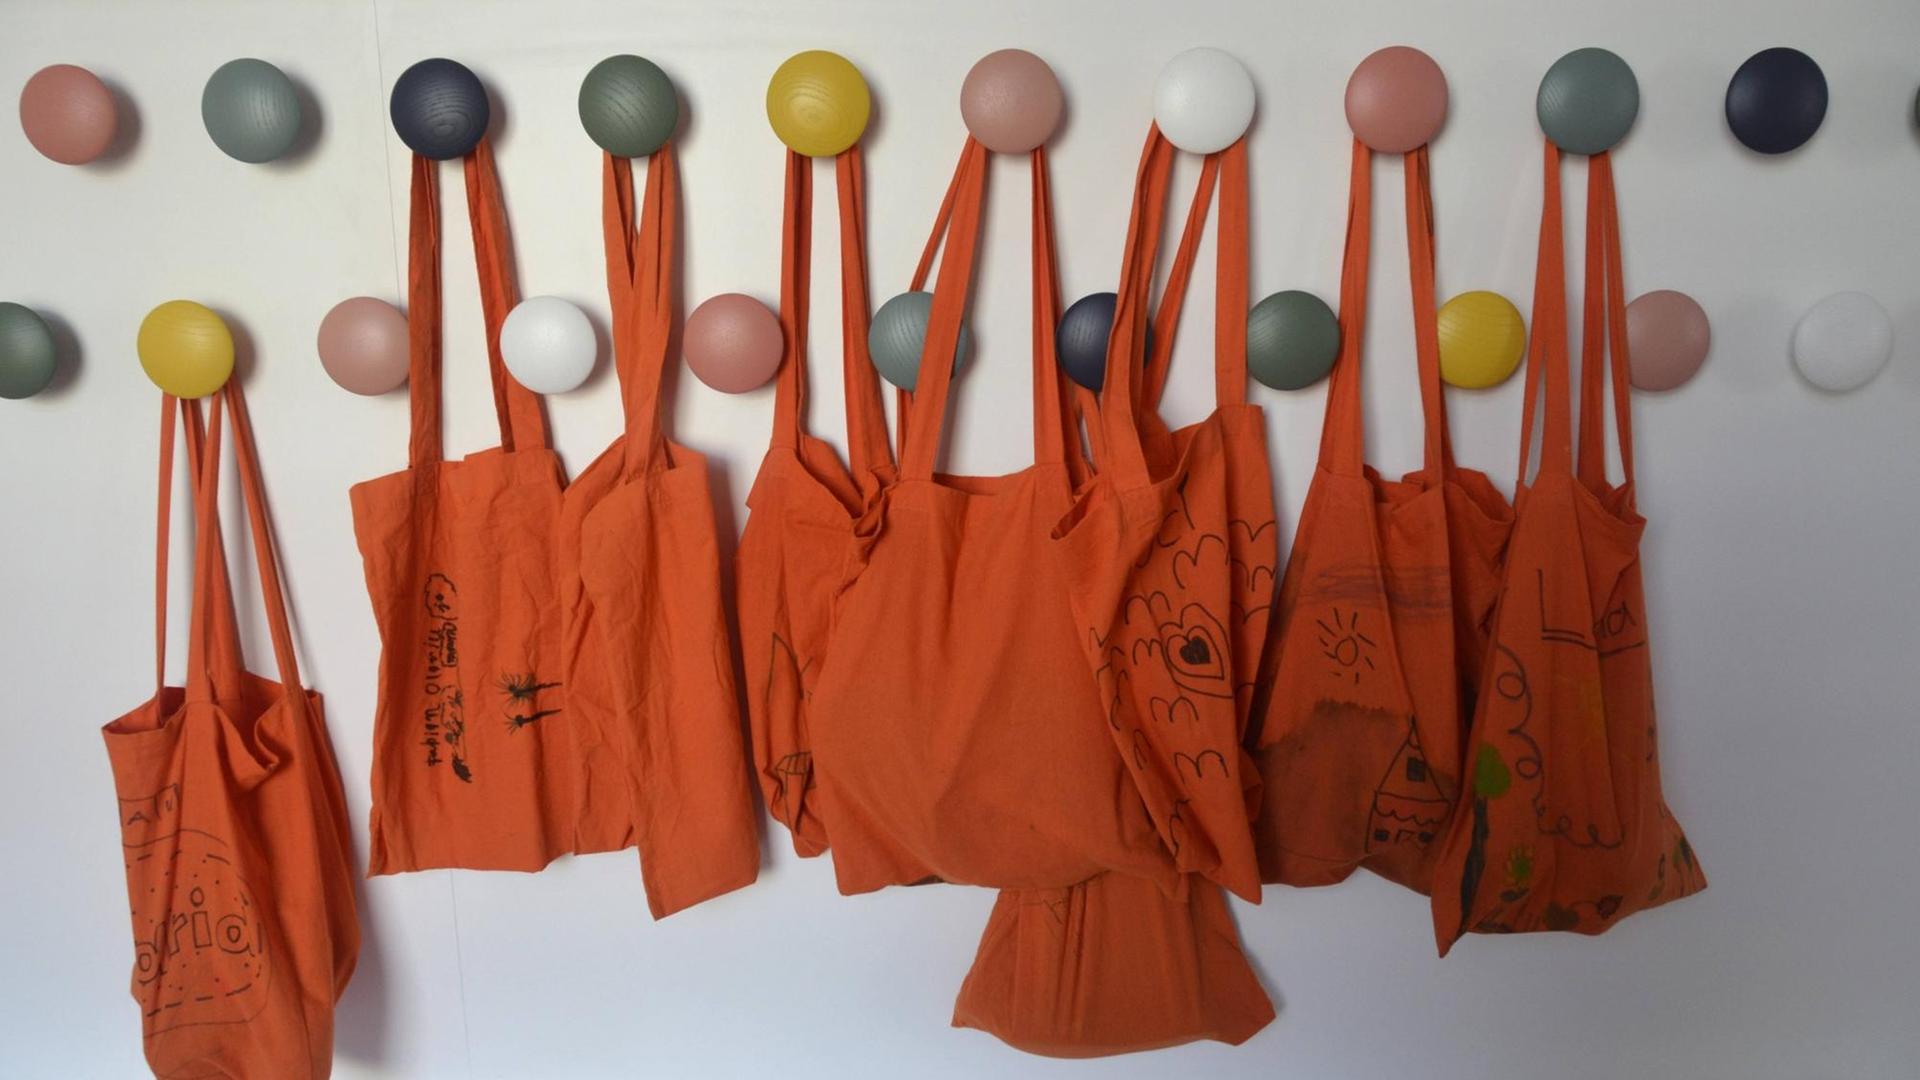 An bunten Haken hängen orangefarbene Stoffbeutel.